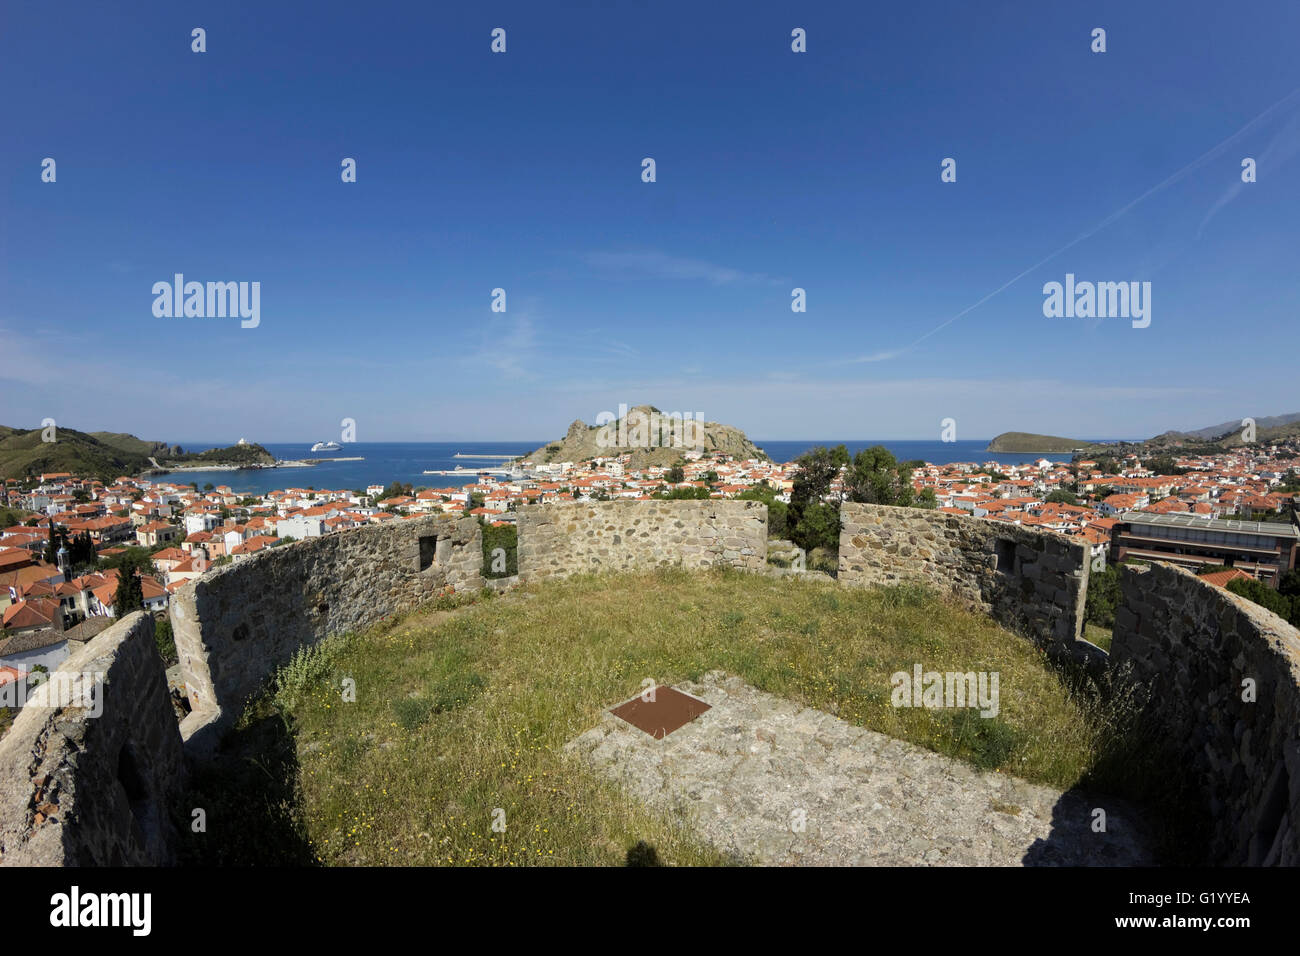 Architektonische Dabia Burg, Myrina Hauptstadt Vororte und die byzantinische Burg gegen blauen Himmel.  Limnos oder Lemnos Griechenland Stockfoto